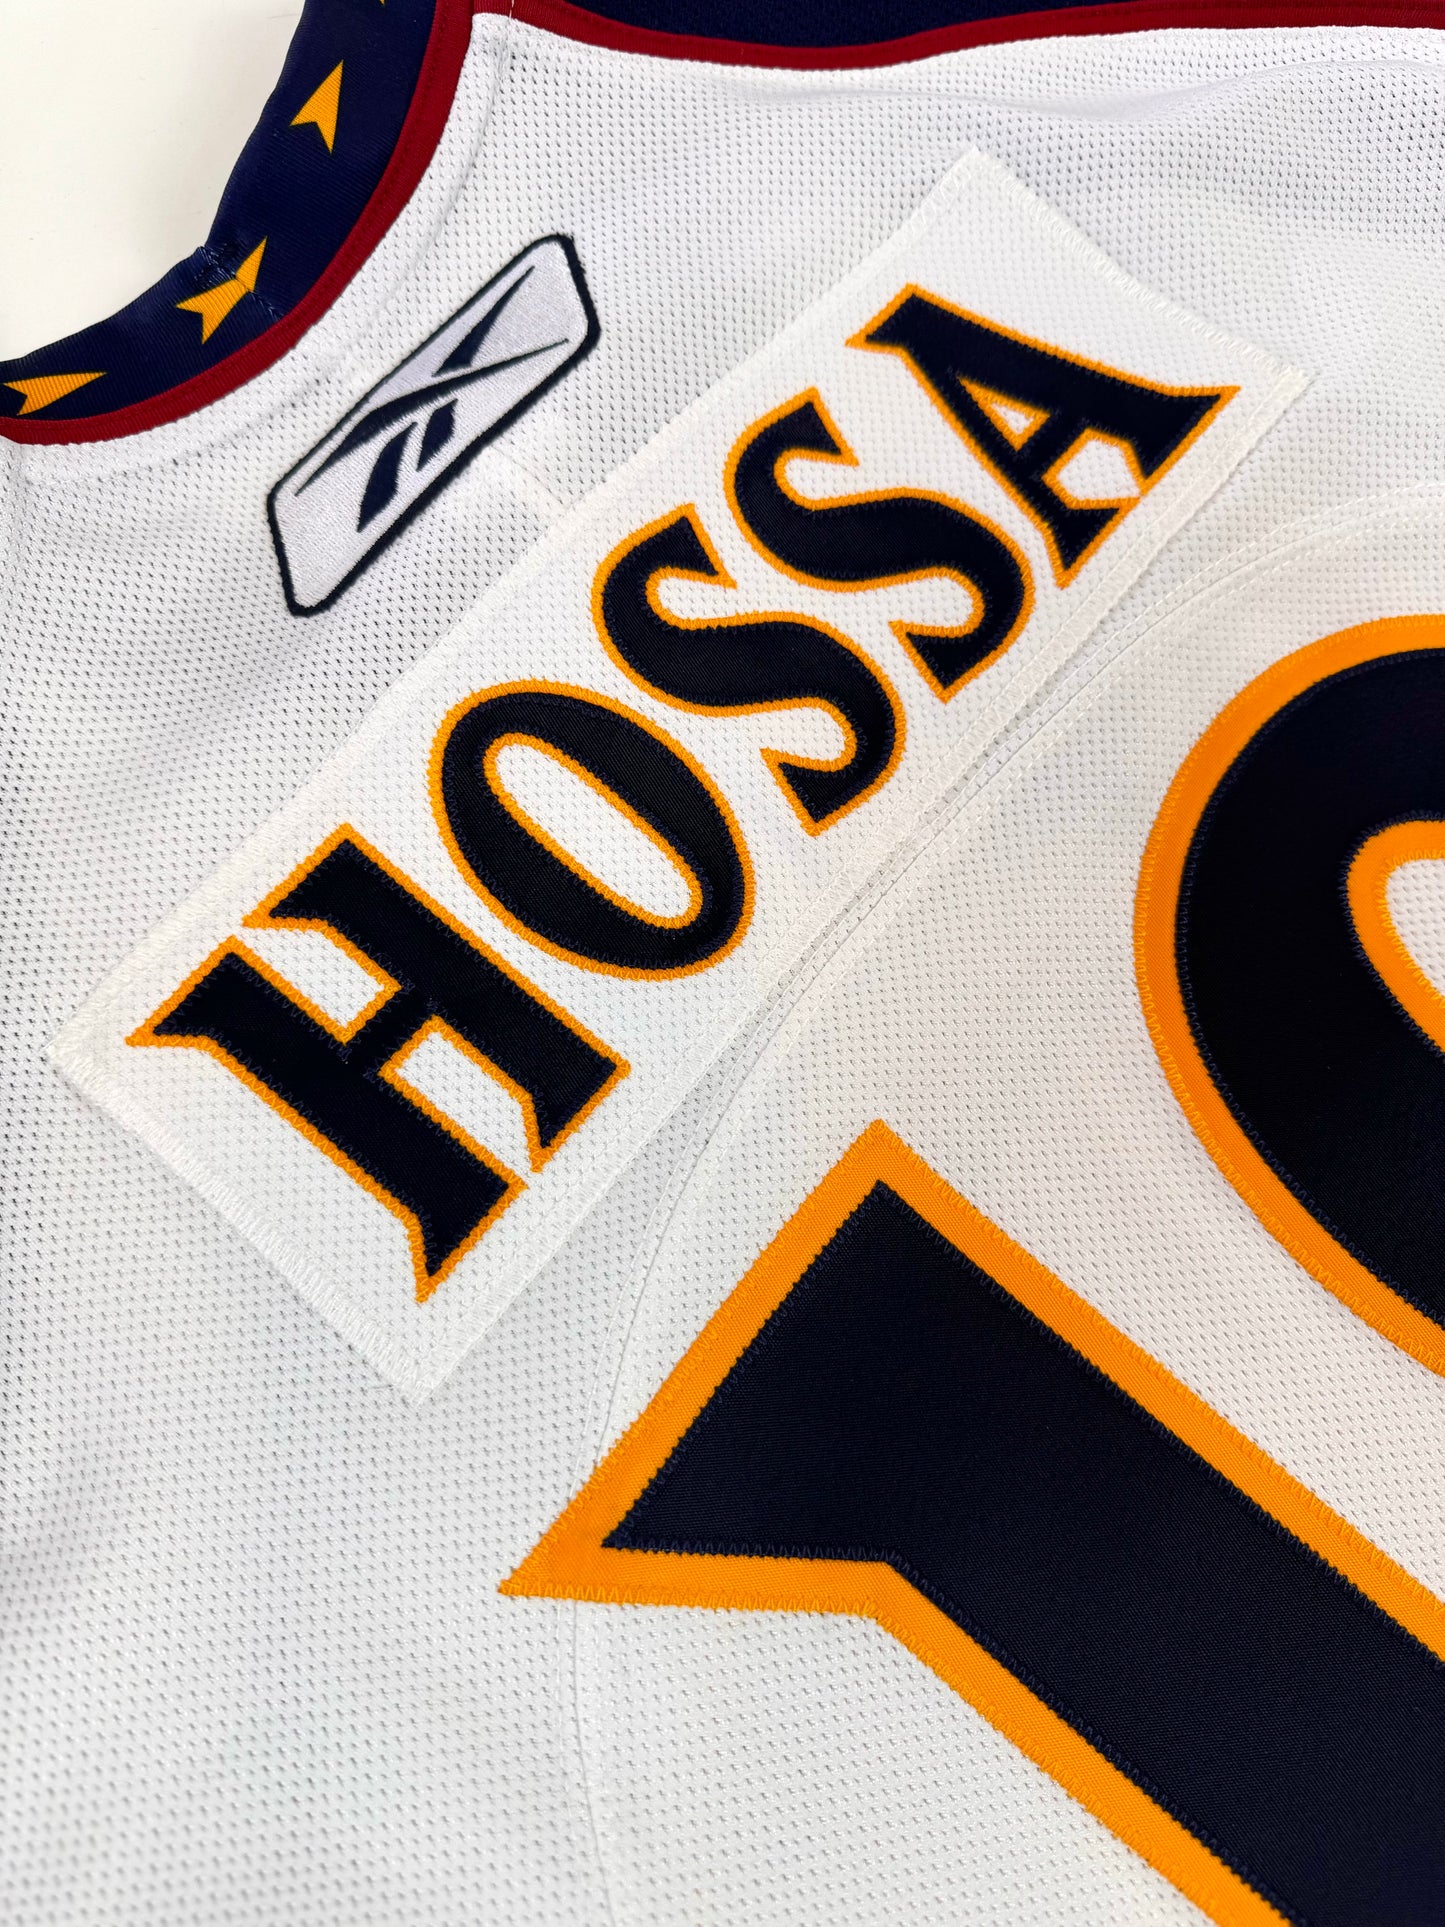 Atlanta Thrashers 2007-2008 Marian Hossa NHL Hockey Jersey (58/XXL)